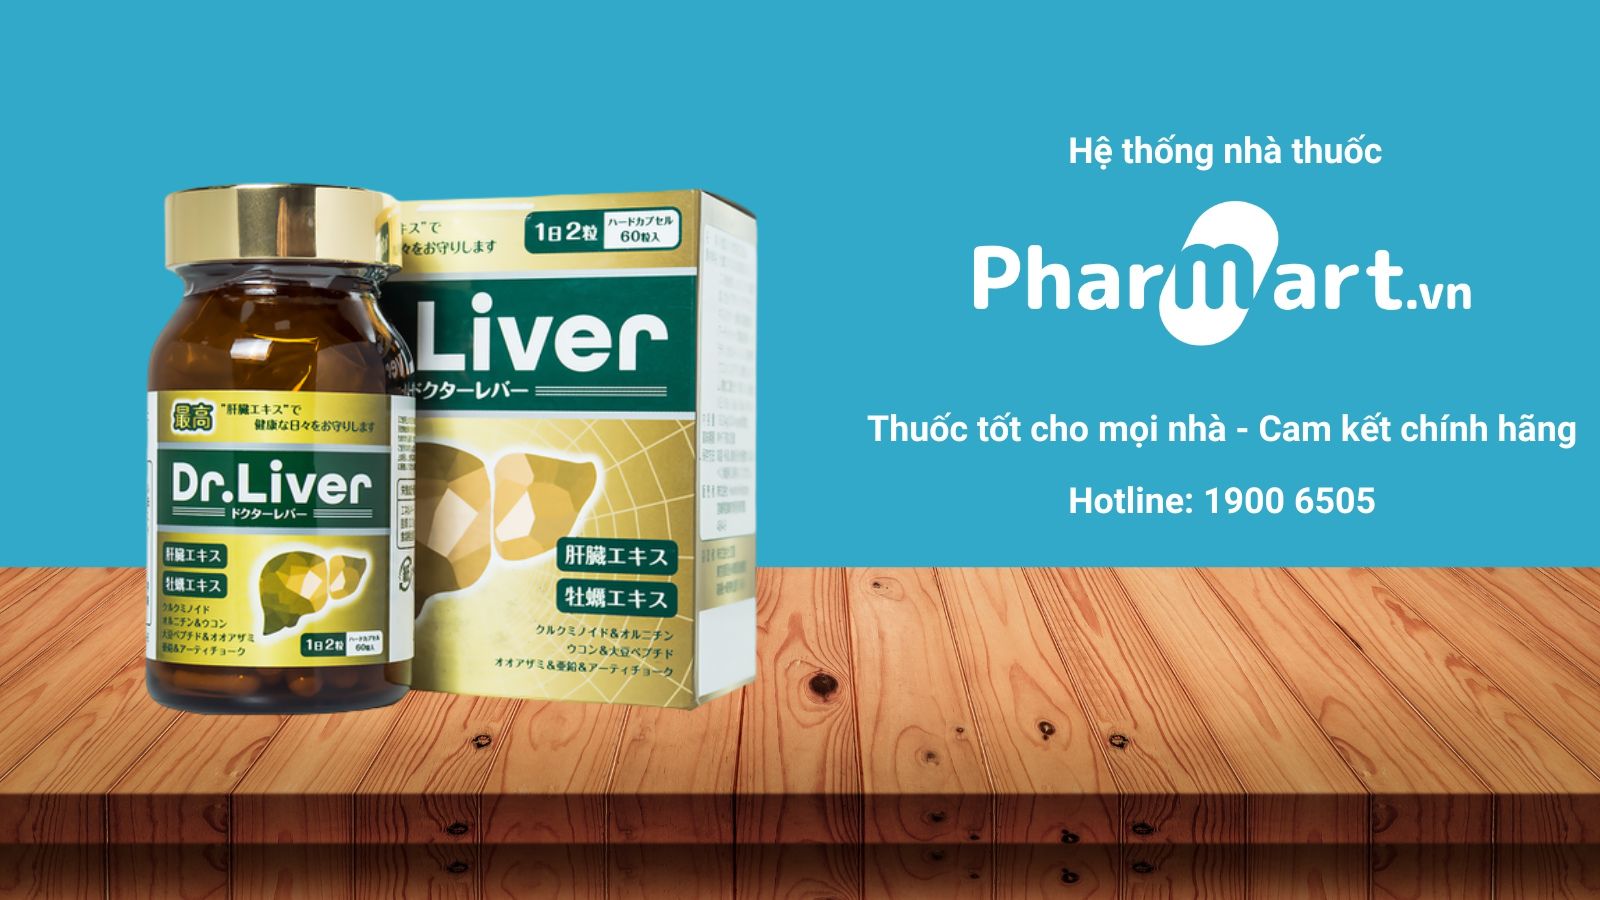 Dr.Liver Jpanwell hiện đang được bán chính hãng tại Nhà thuốc Pharmart.vn